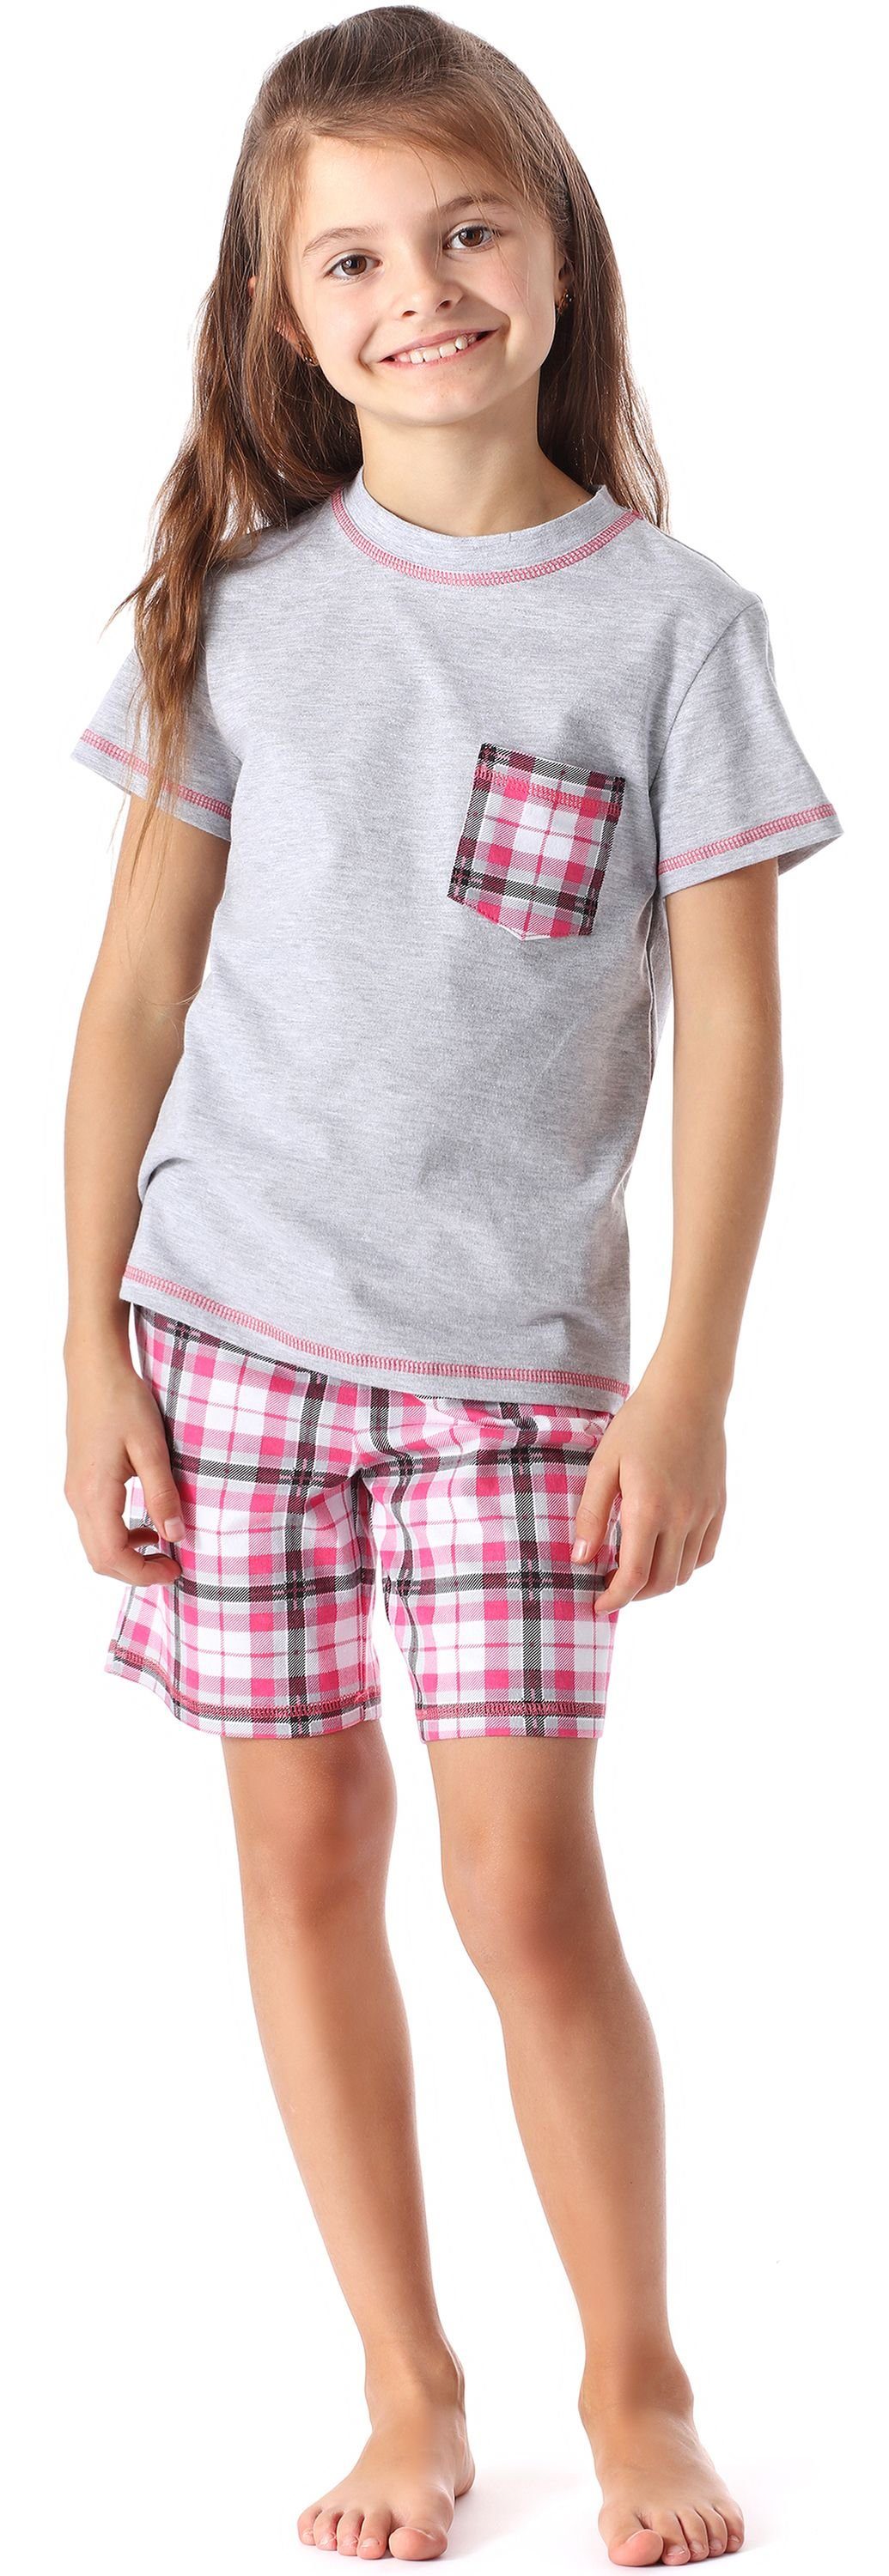 Style Mädchen Baumwolle Pyjama Set Schlafanzug aus Melange/Kariert Kurz MS10-292 Schlafanzüge Merry